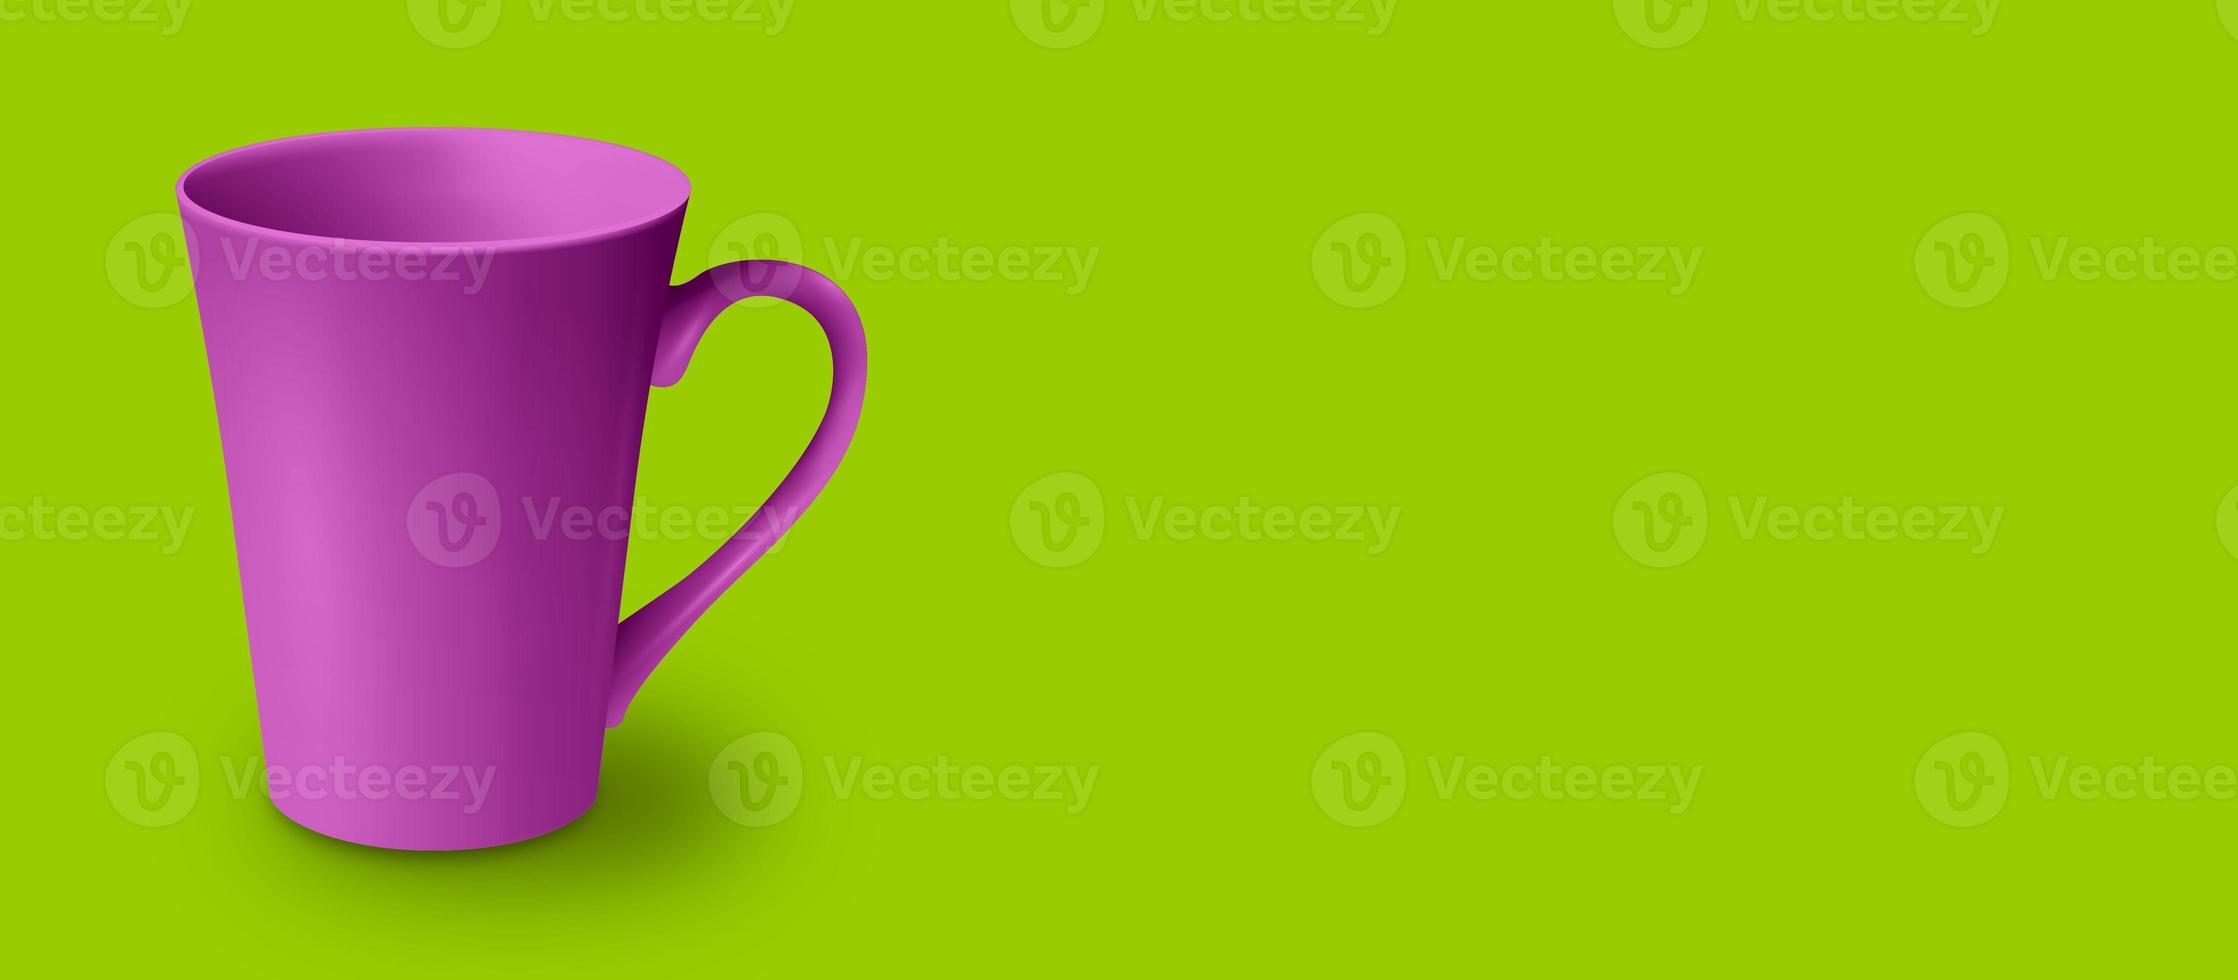 maqueta de taza en blanco aislada en representación 3d coloreada. espacio de copia agregado para texto. adecuado para su proyecto de diseño. foto